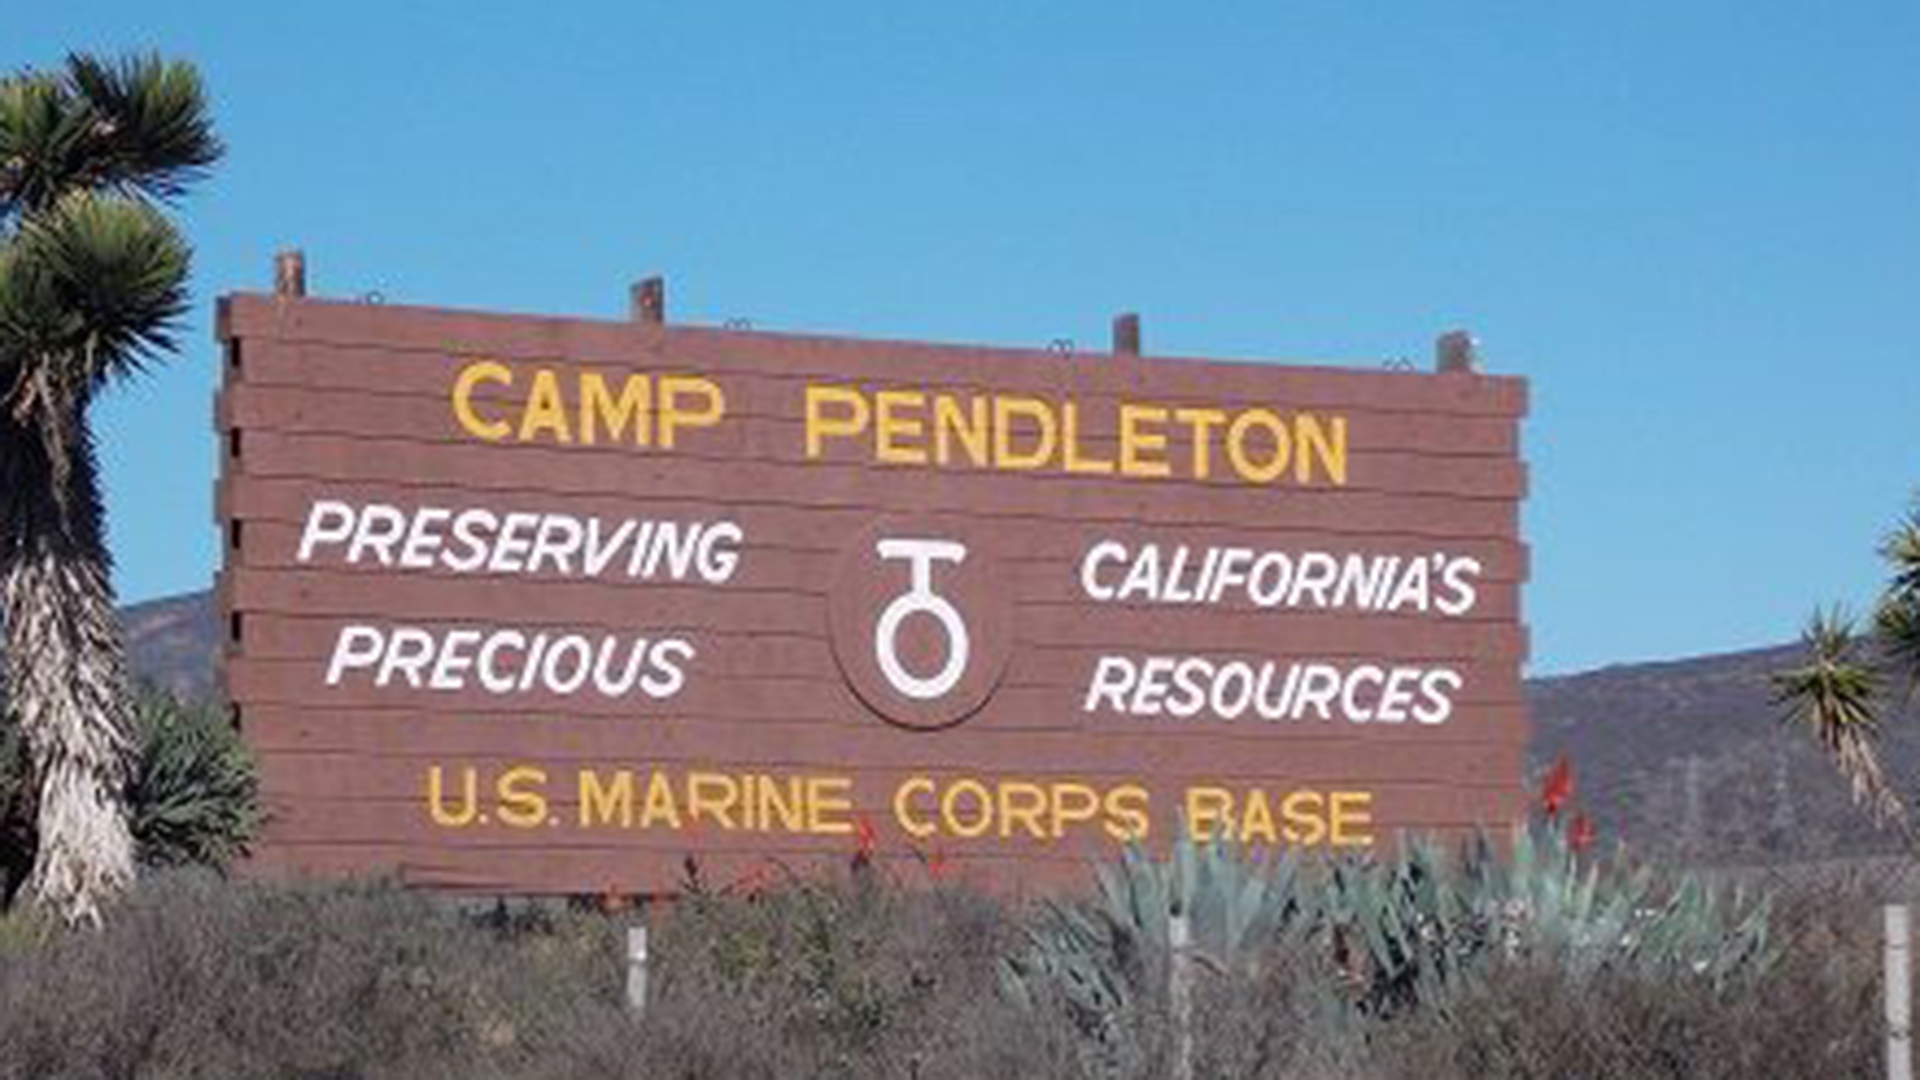 Camp Pendleton